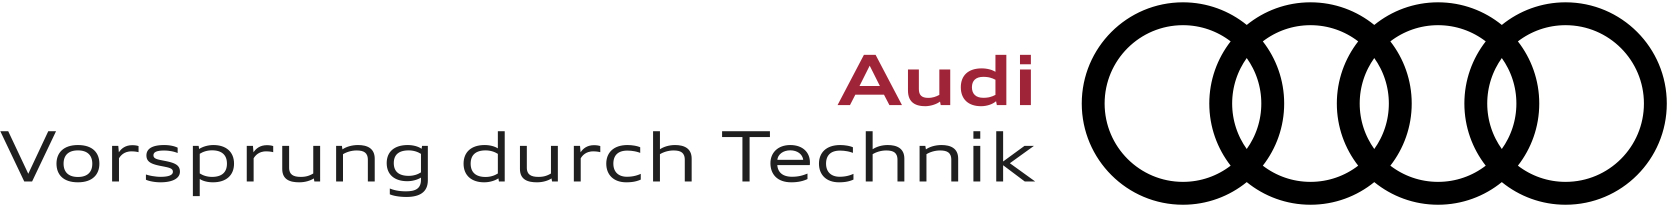 Audi Logo with Tagline.jpg